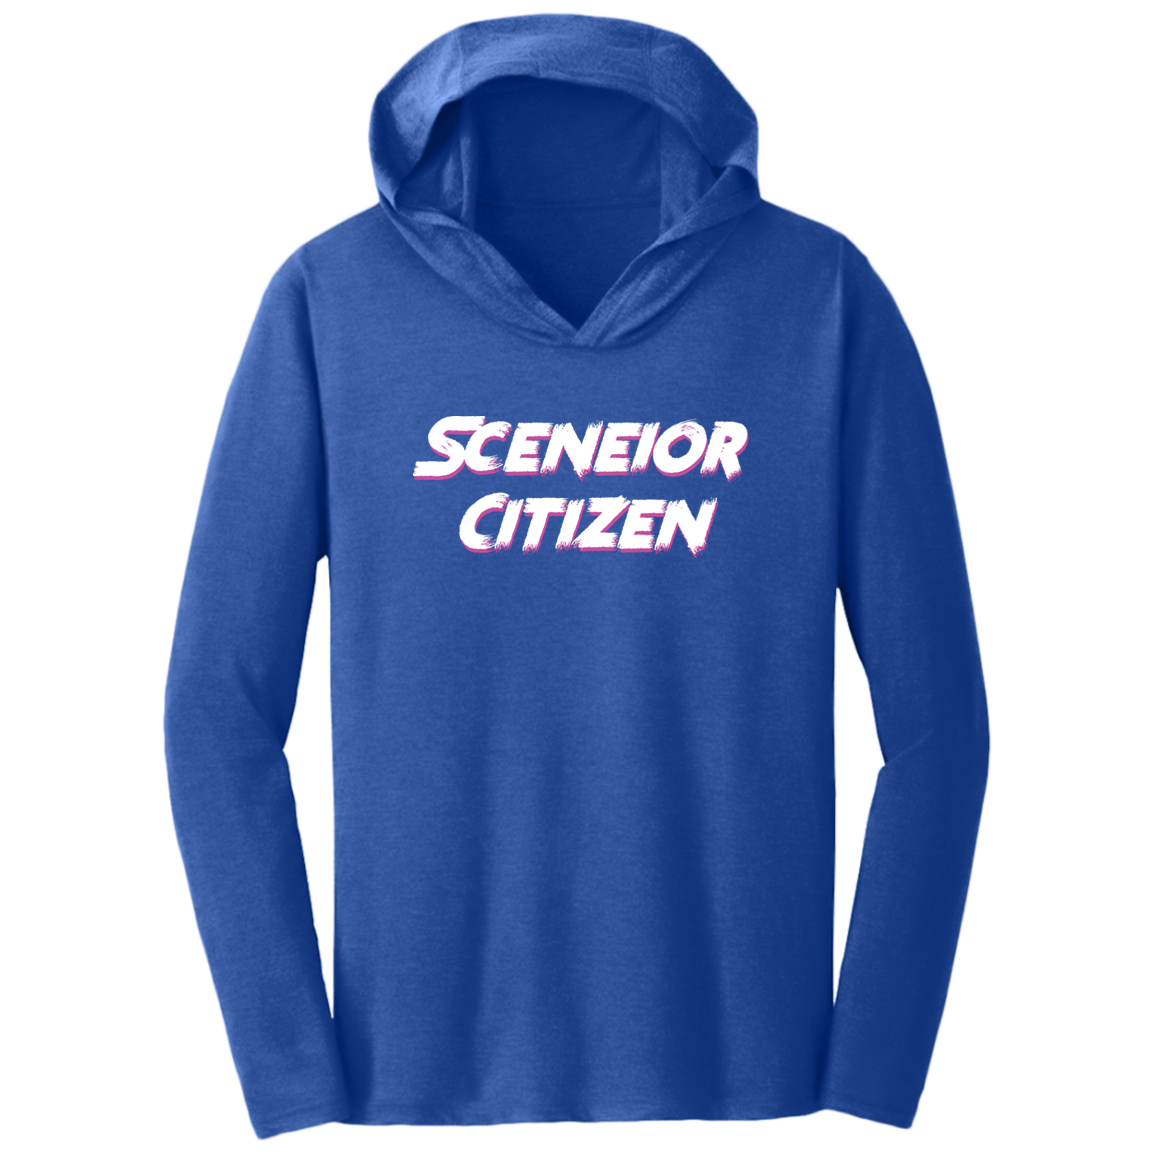 "Sceneior Citizen" Triblend T-Shirt Hoodie